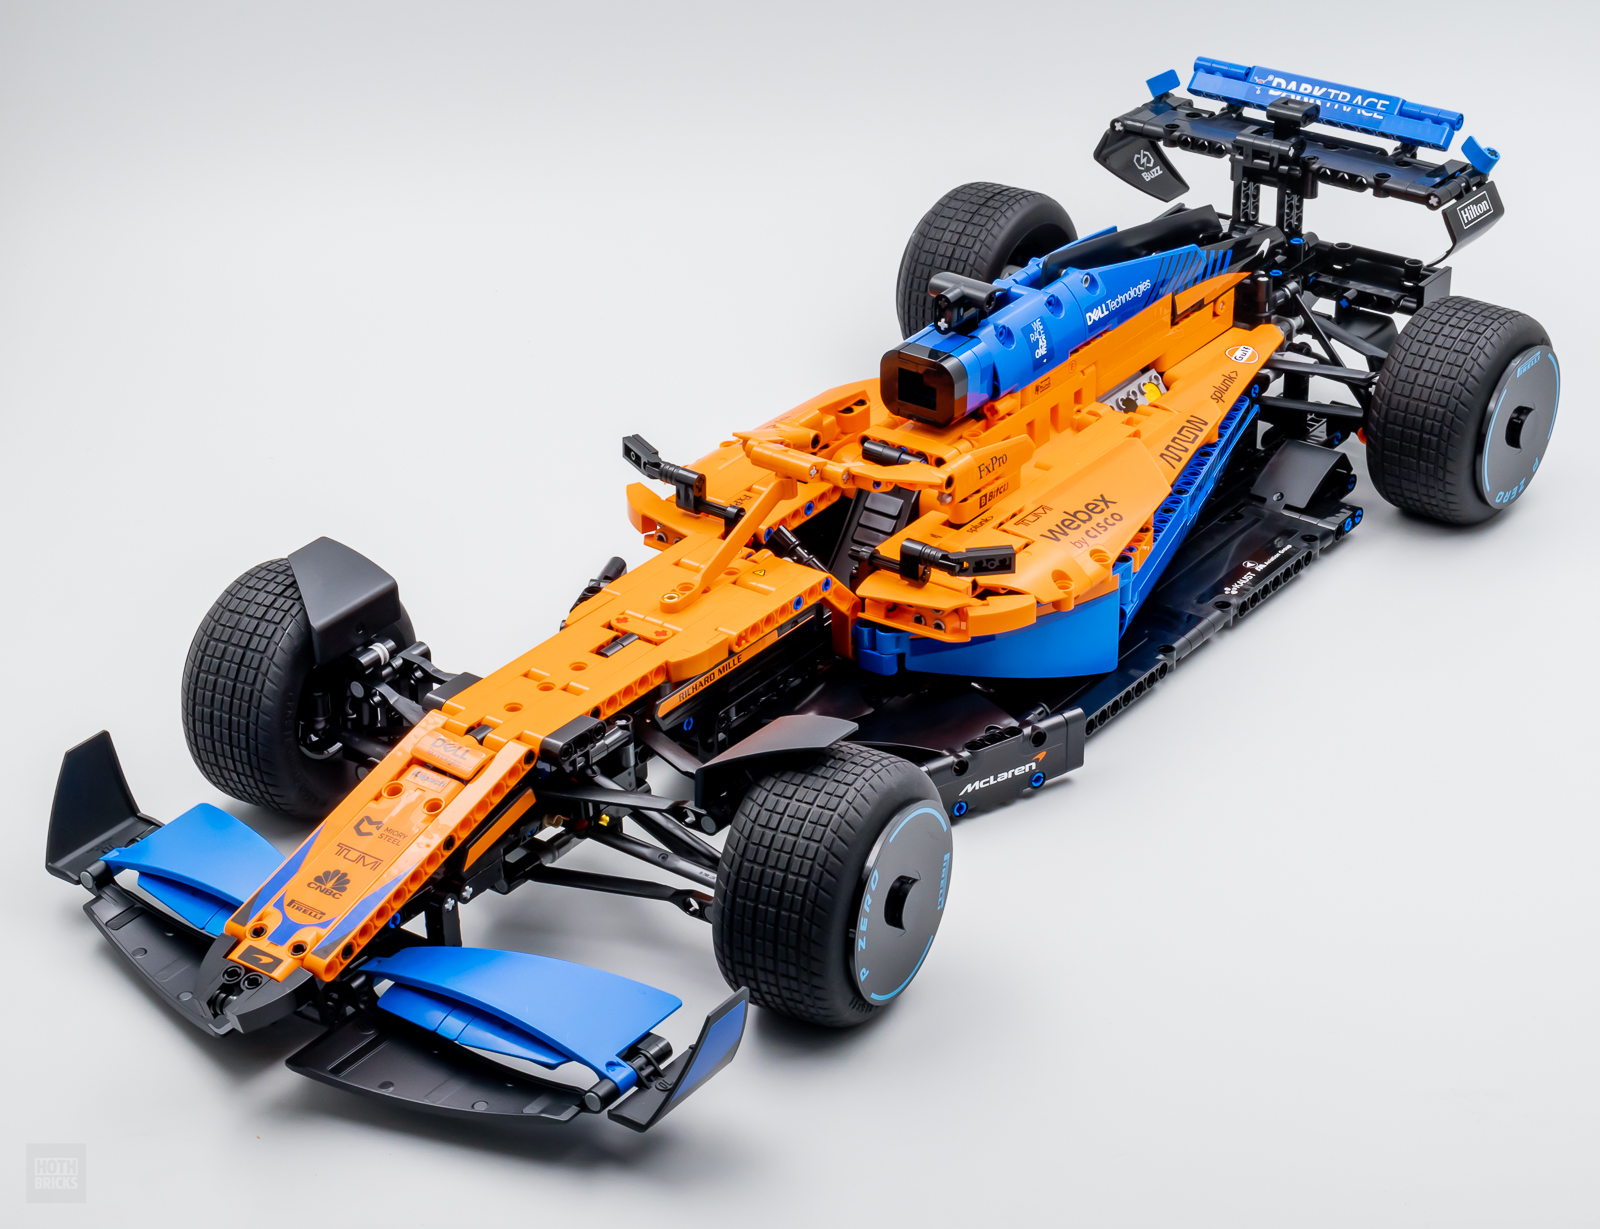 , En promotion, ce LEGO Technic complexe est l’une des plus belles voitures de course à construire en briques